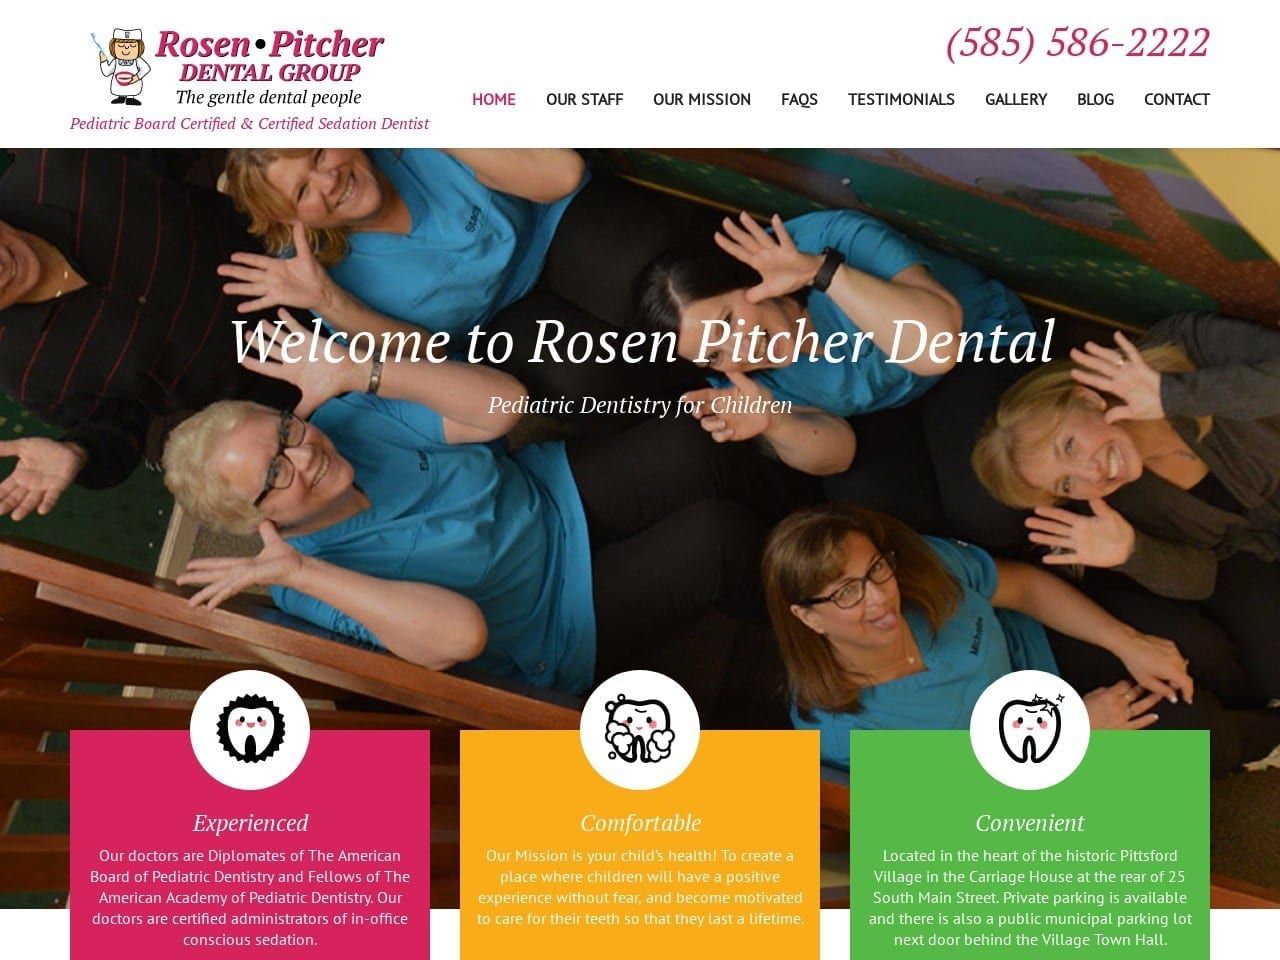 Rosen Pitcher Dental Website Screenshot from rosenpitcherdental.com